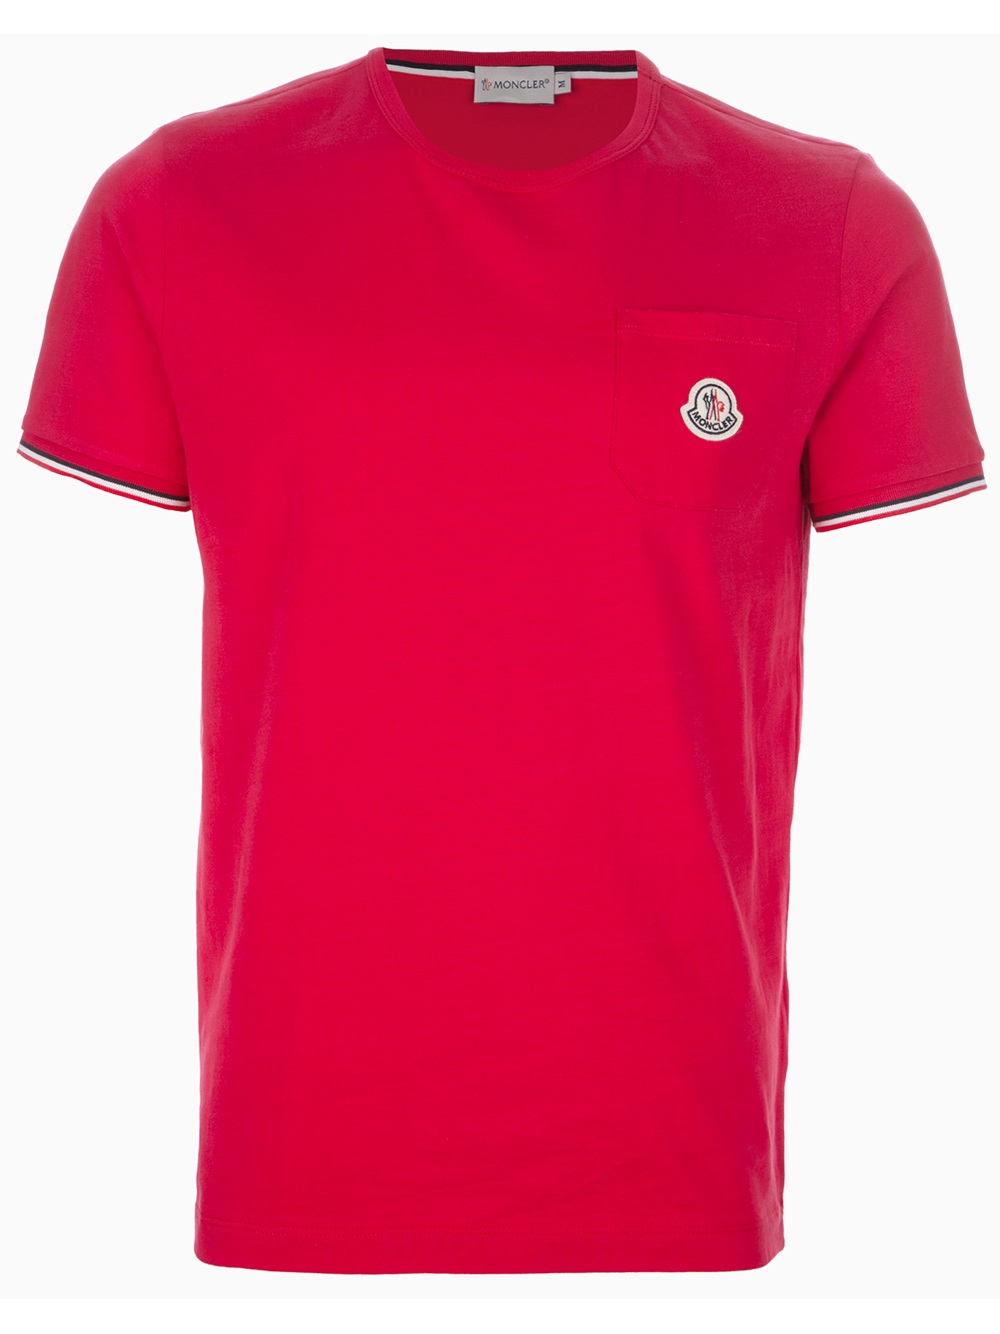 Moncler Logo Pocket Tshirt in Red for Men - Lyst